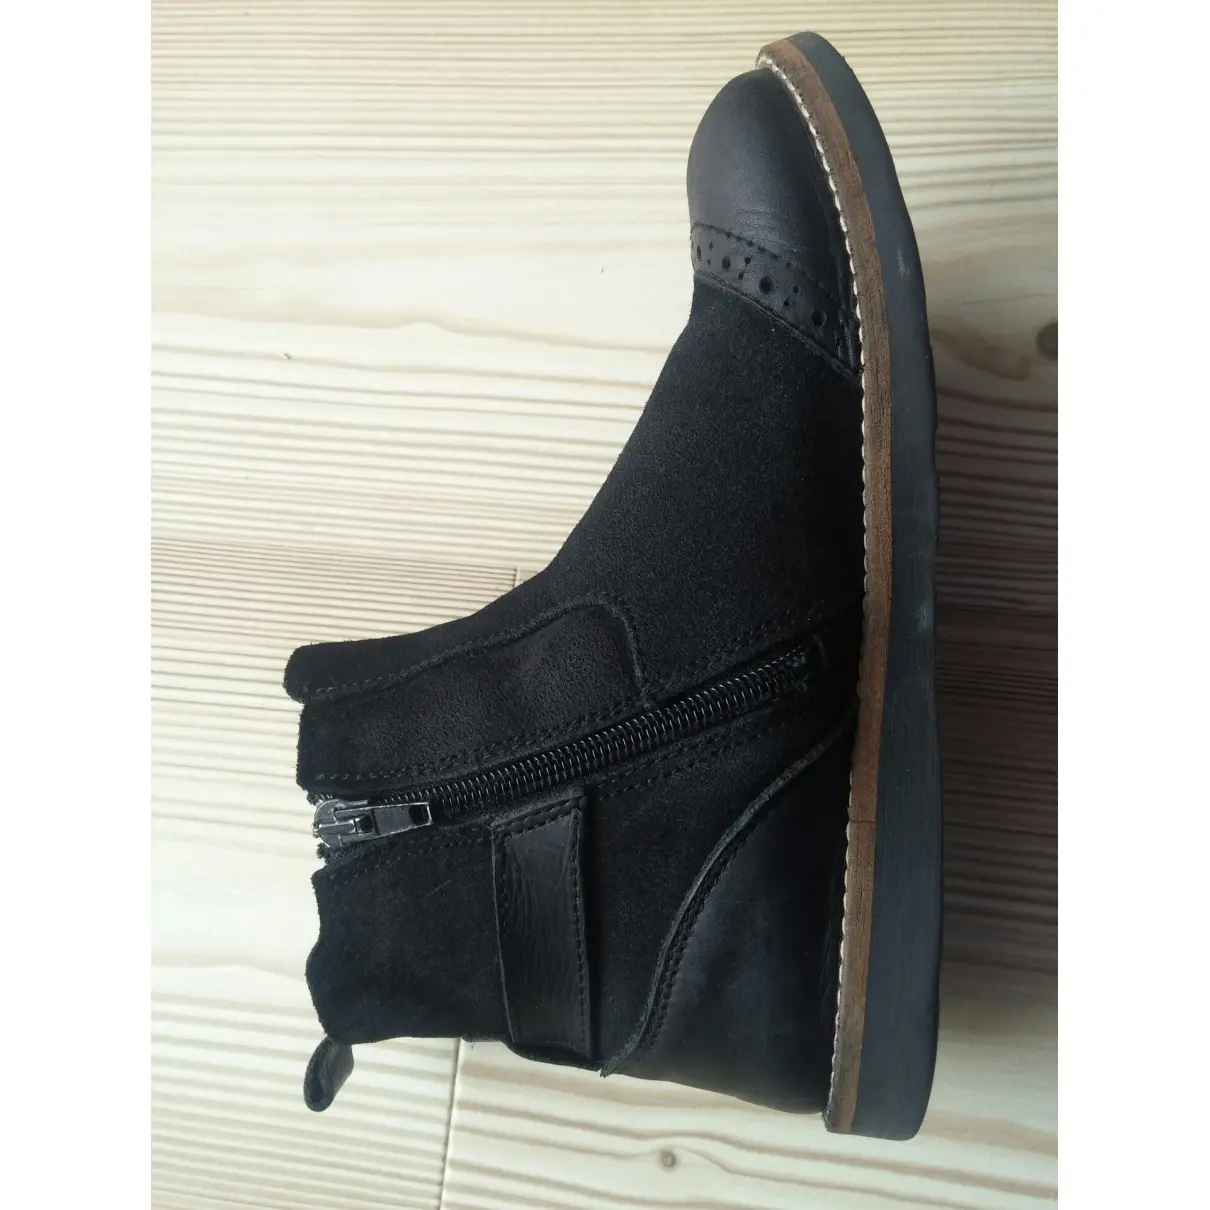 Leather boots Jacadi